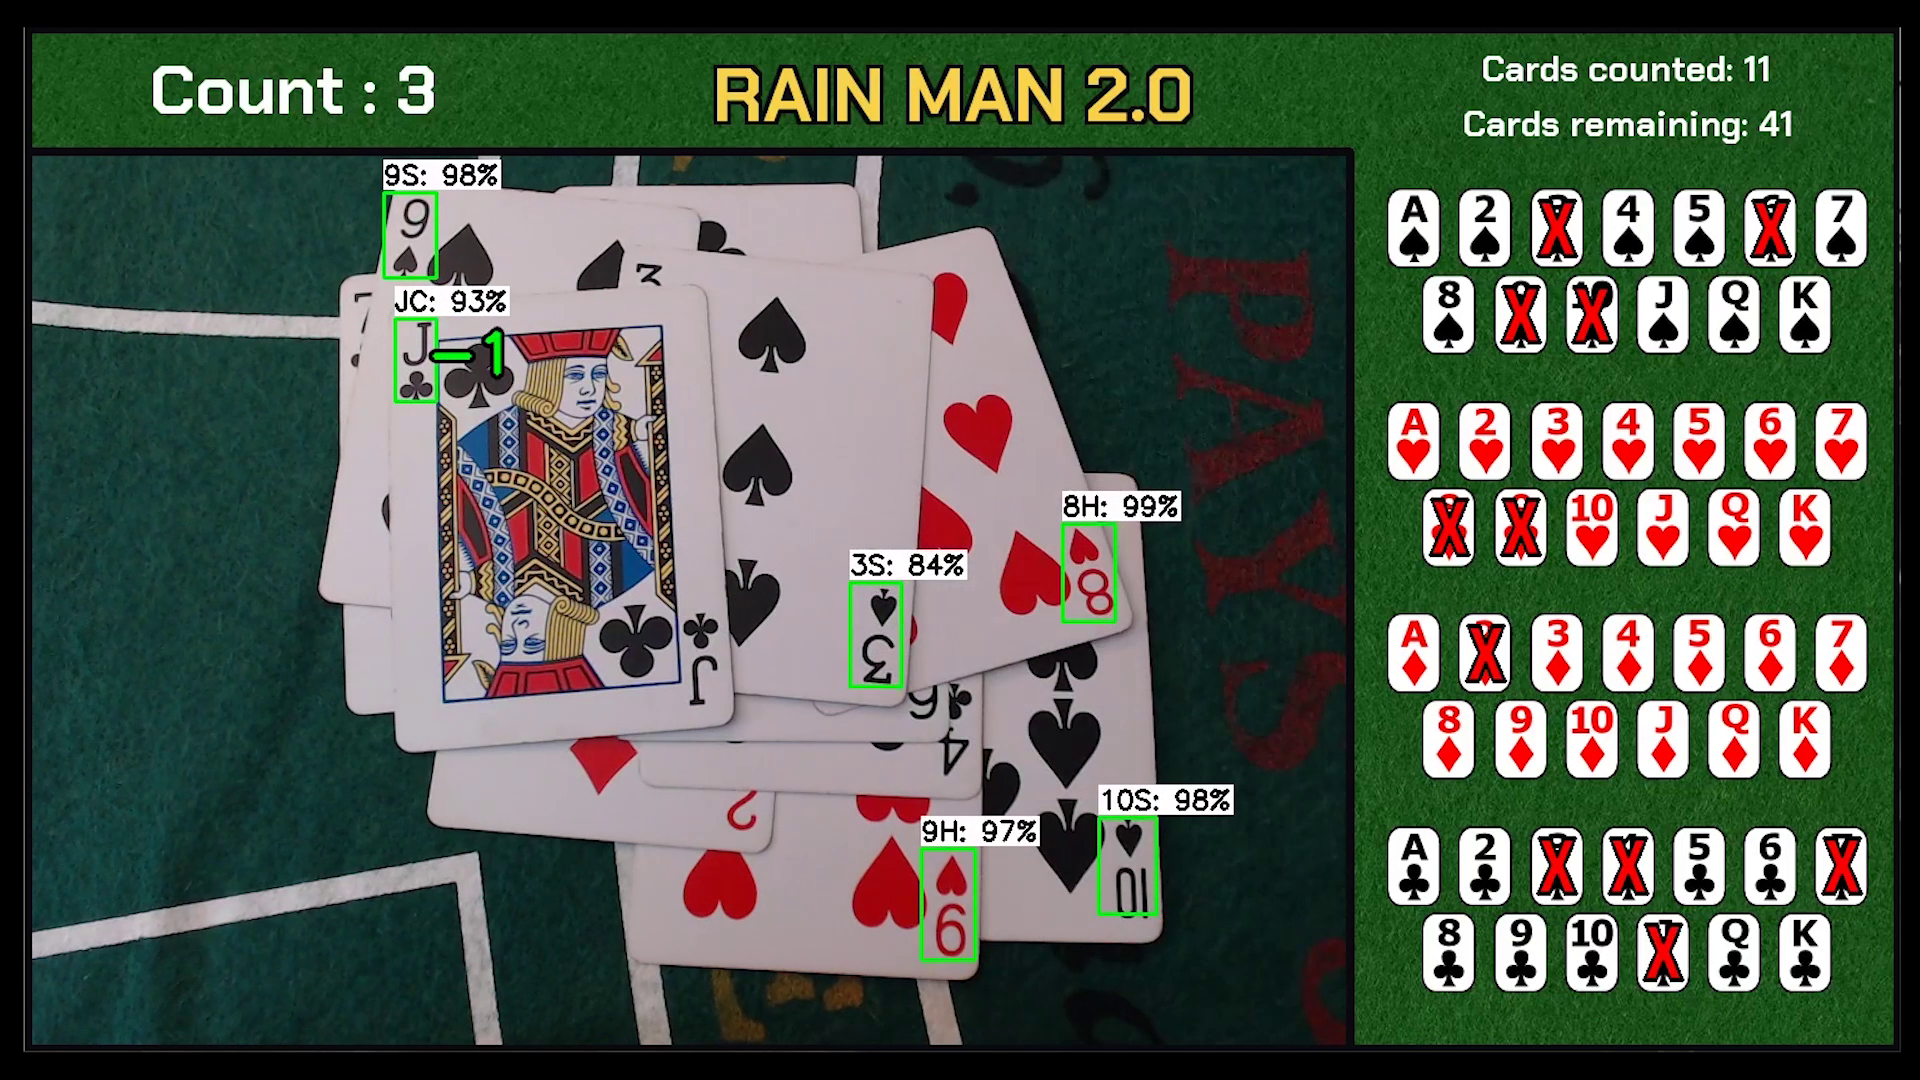 RAIN MAN 2.0